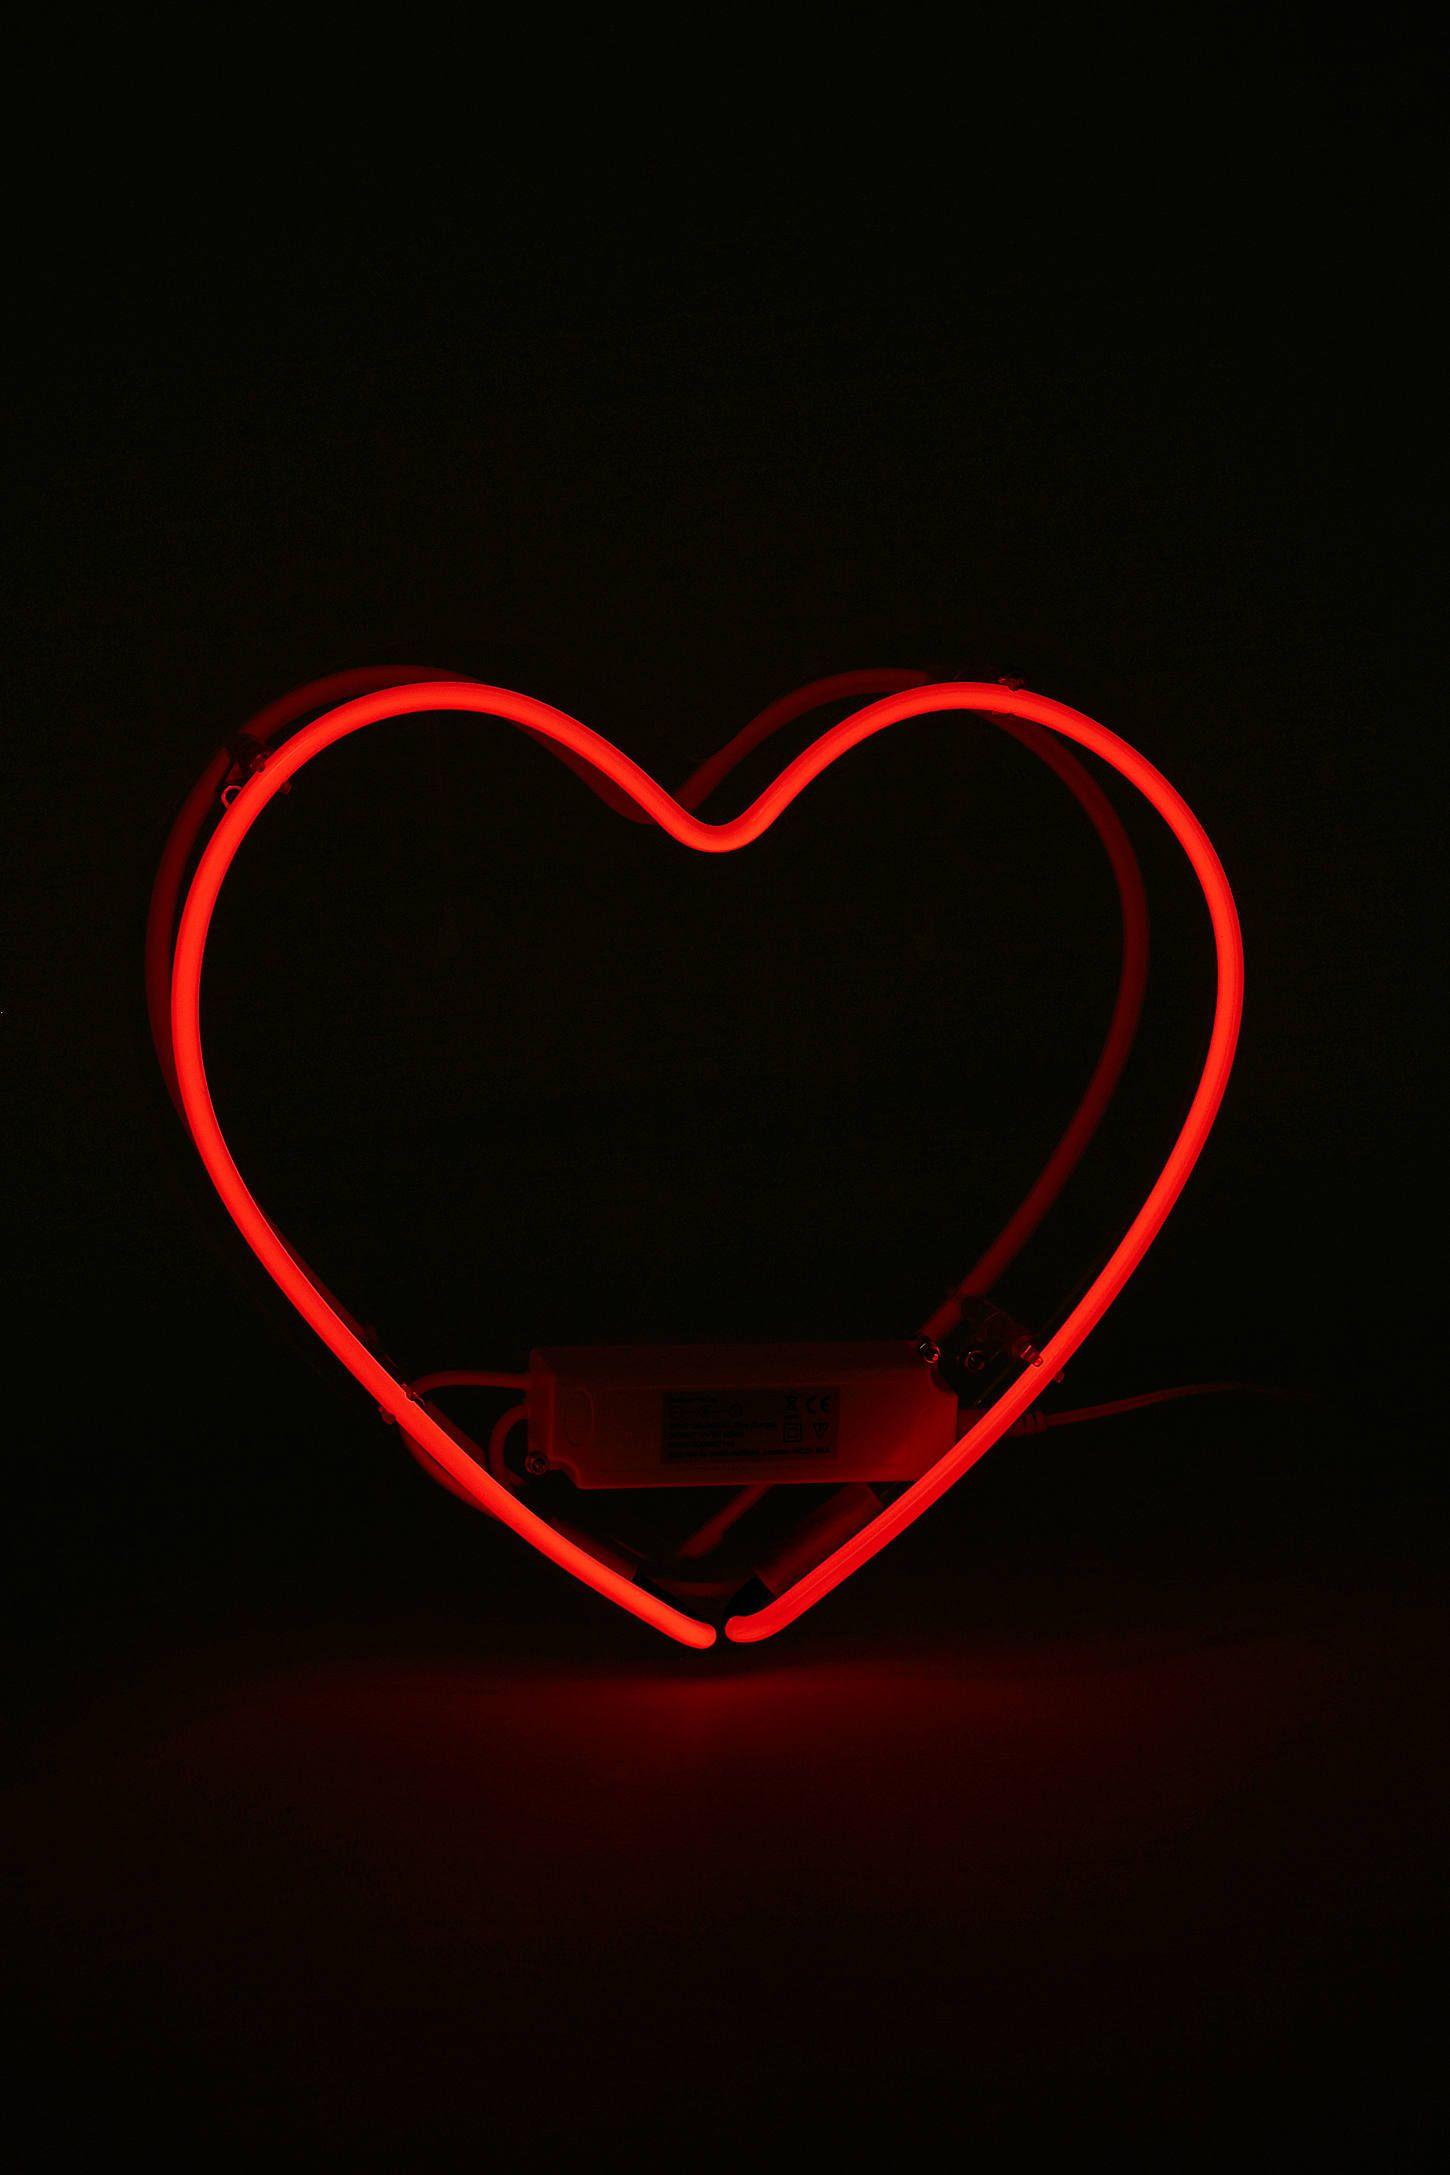 Hình nền tim tuyệt đẹp đầy tình yêu sẽ làm bạn tan chảy. Với màu đỏ đặc trưng, hình ảnh này thể hiện sự ấm áp và nồng nàn của tình yêu. Hãy cùng chiêm ngưỡng nó để cảm nhận được cảm xúc tuyệt vời này.